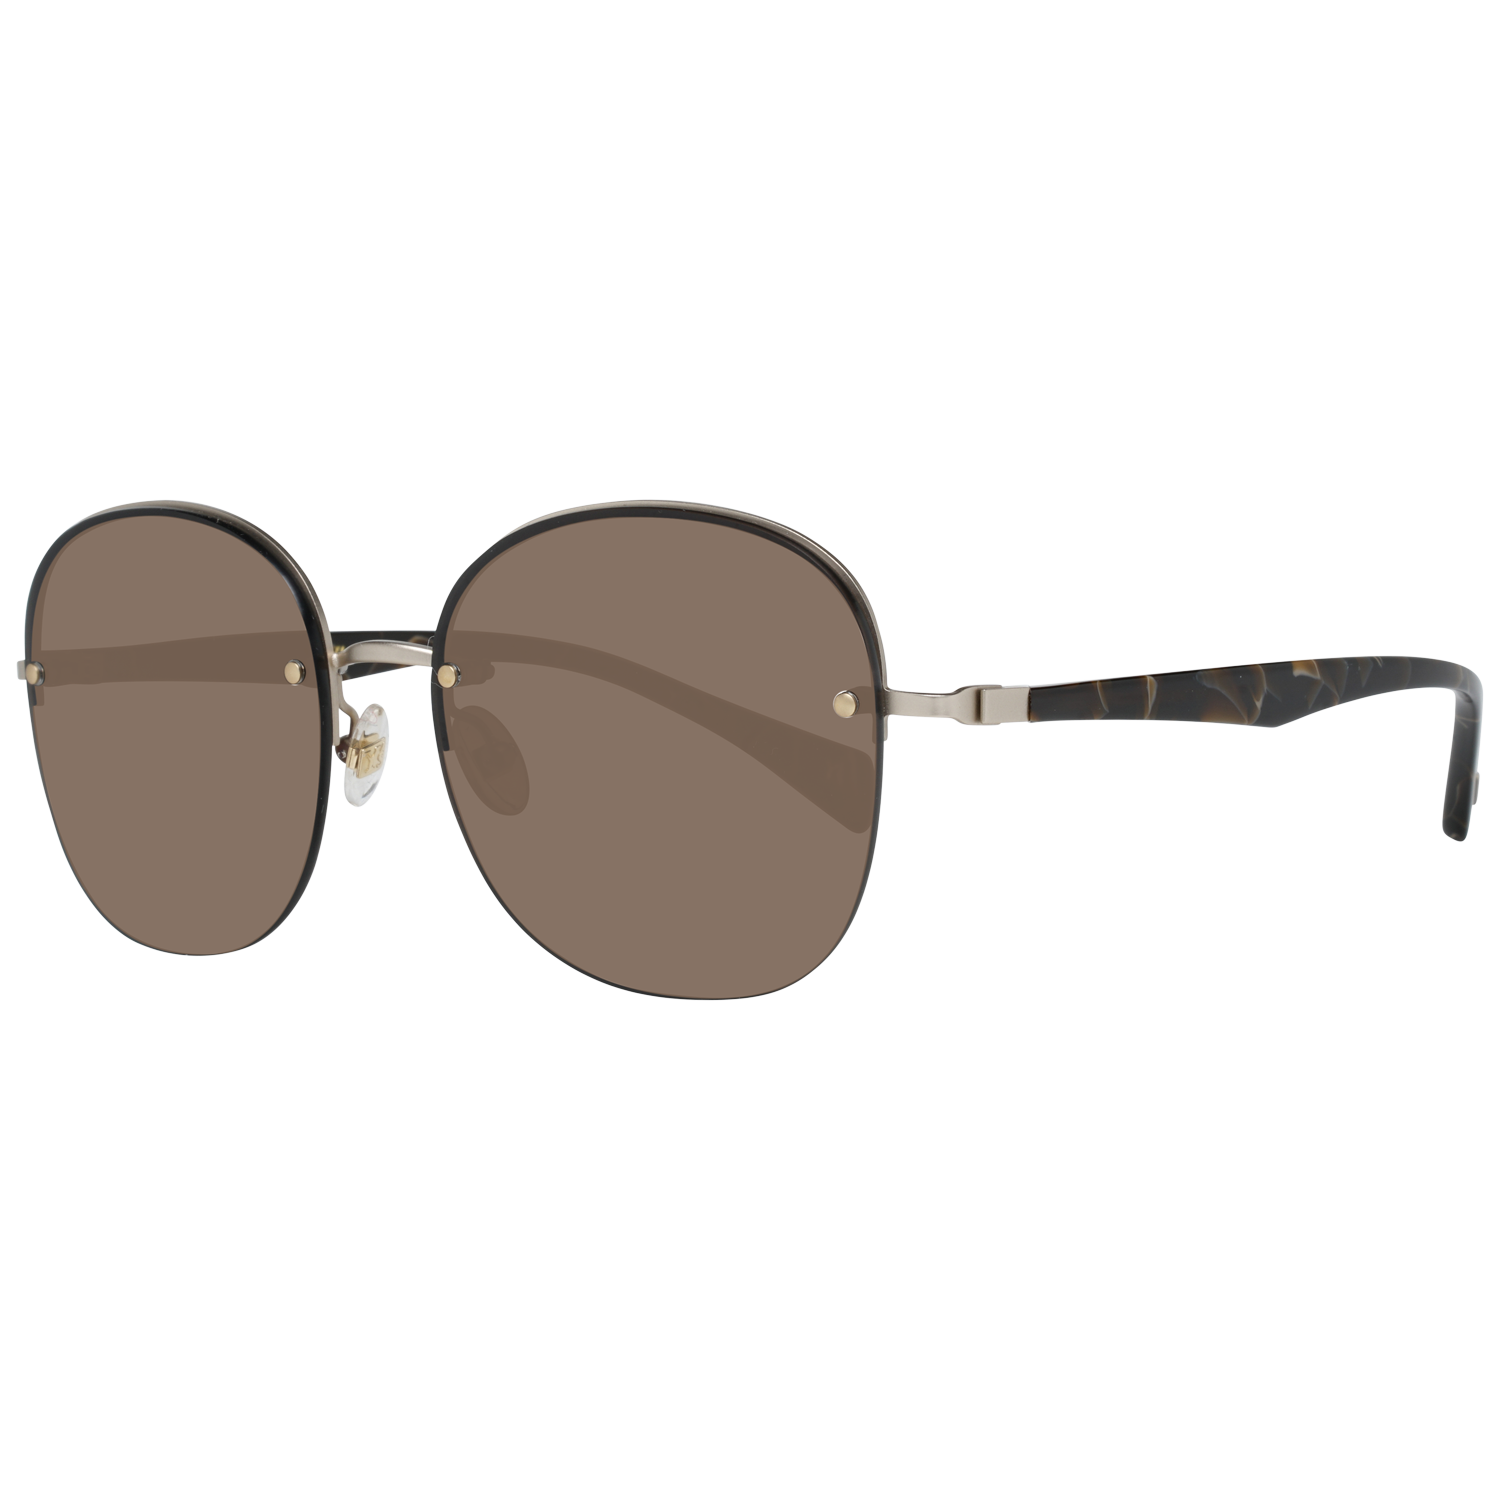 Yohji Yamamoto Sunglasses YS7003 403 56 Gold